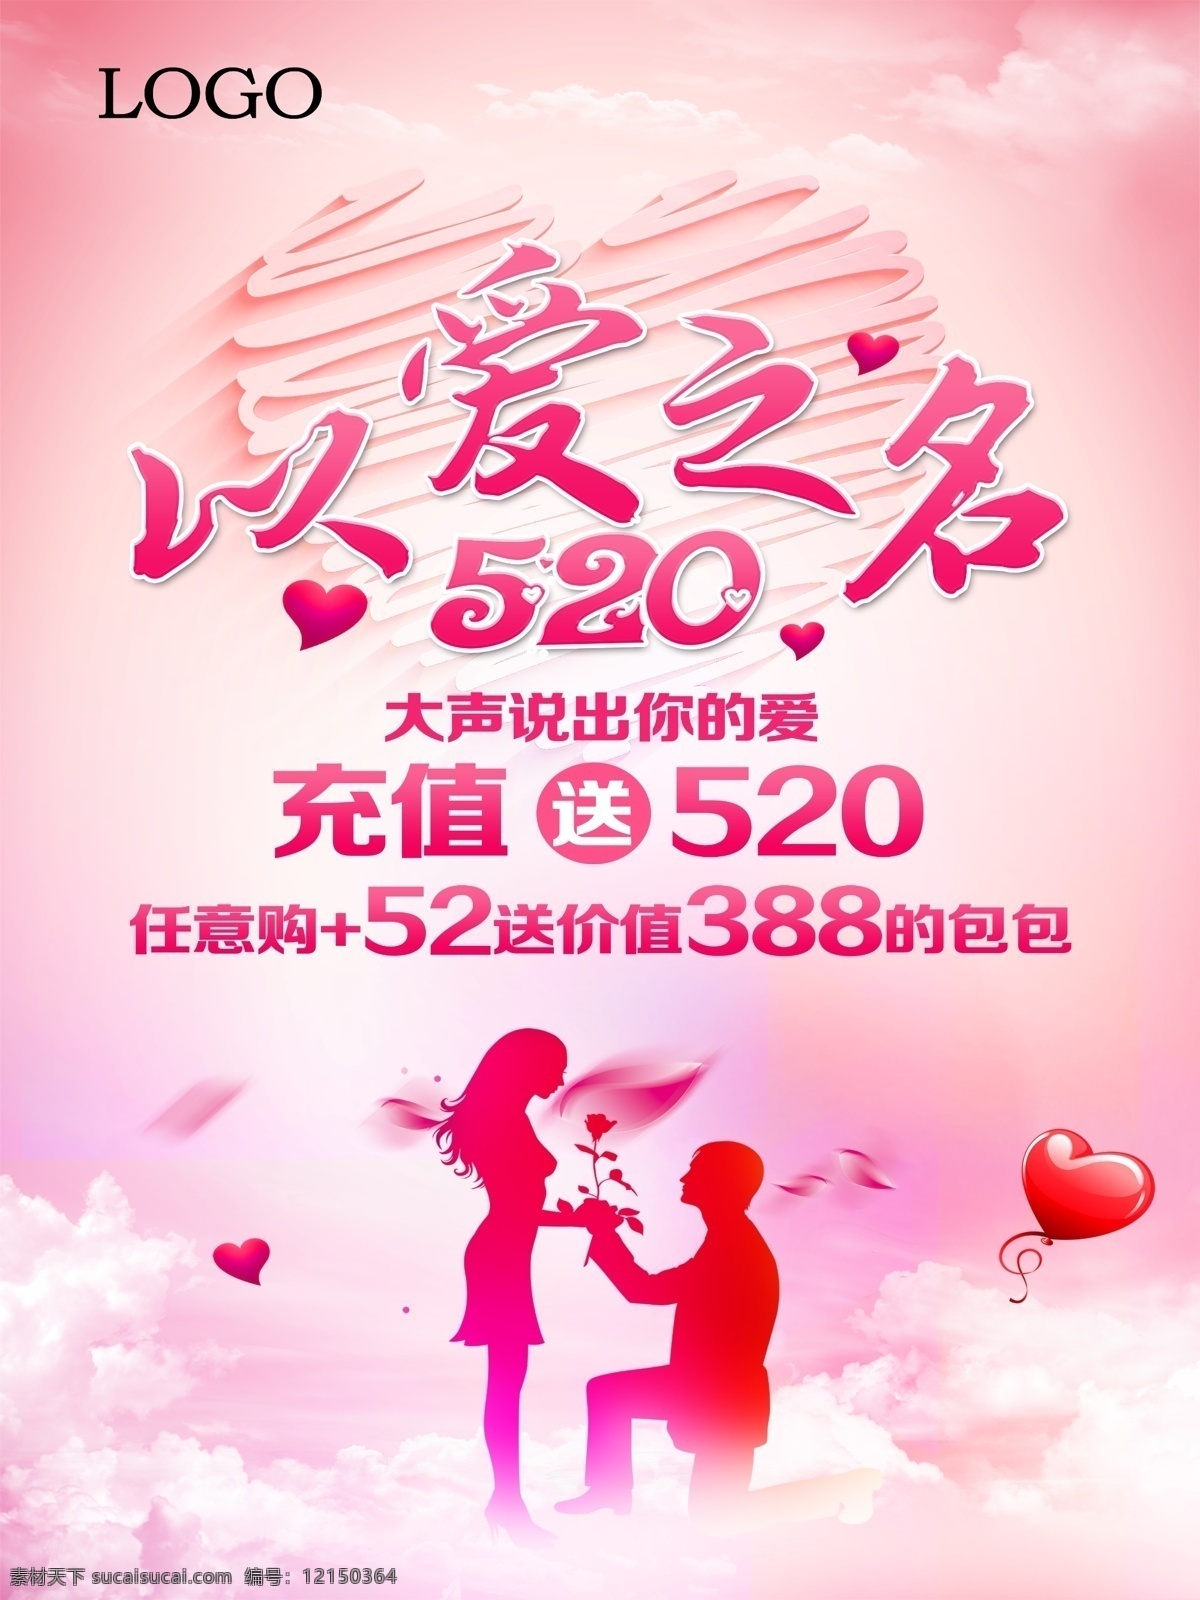 520 海报 以爱之名 充值送520 大声说 你的爱 粉色 玫瑰 剪影